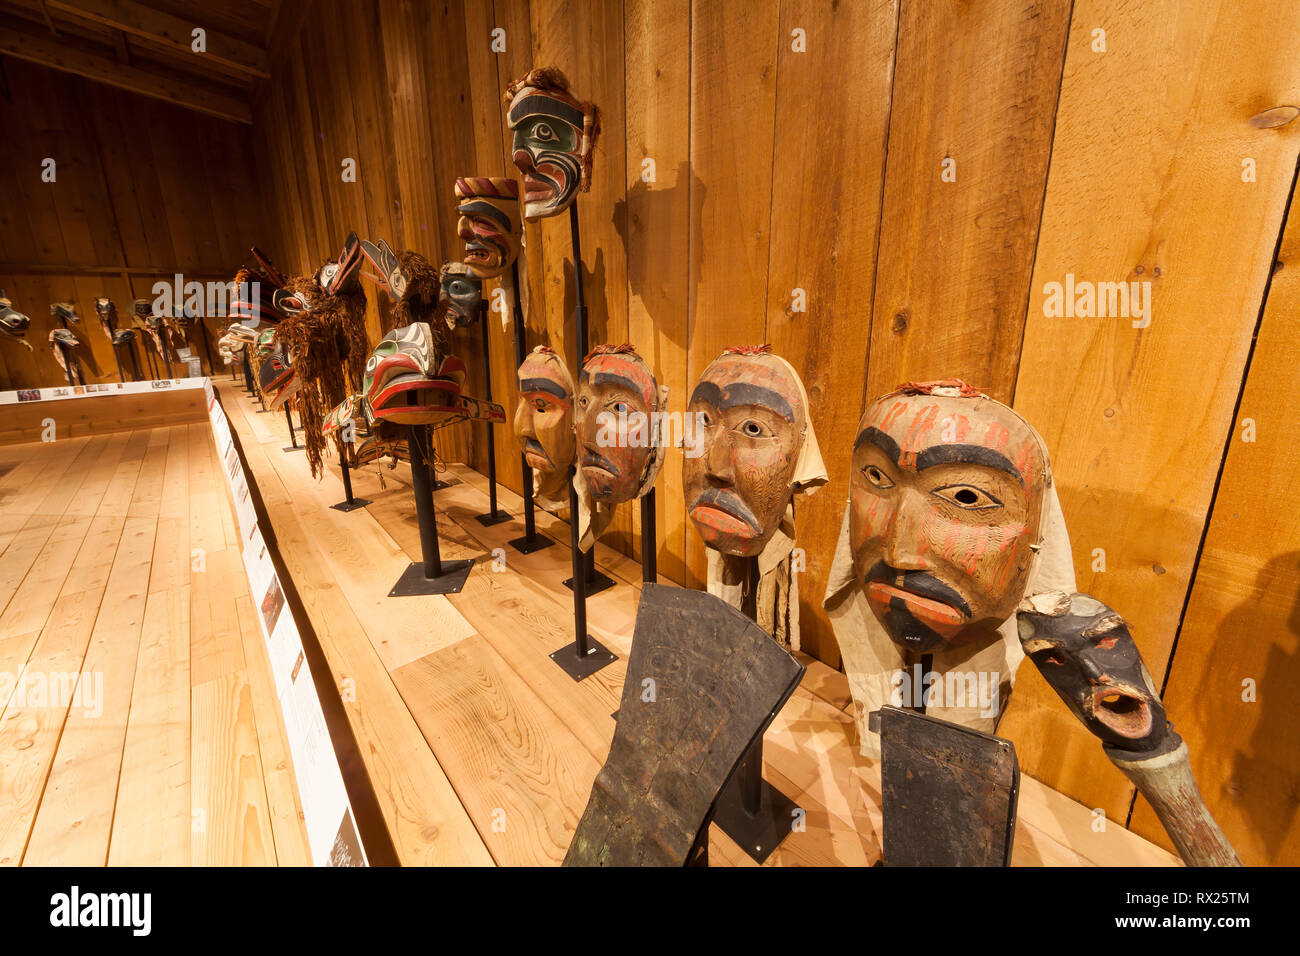 La cultura delle prime Nazioni prende vita al Centro Culturale U'pista, dove sono esposte impagabili maschere Kwakwaka'wakw e icone culturali. Alert Bay, Cormorant Island, British Columbia, Canada Foto Stock